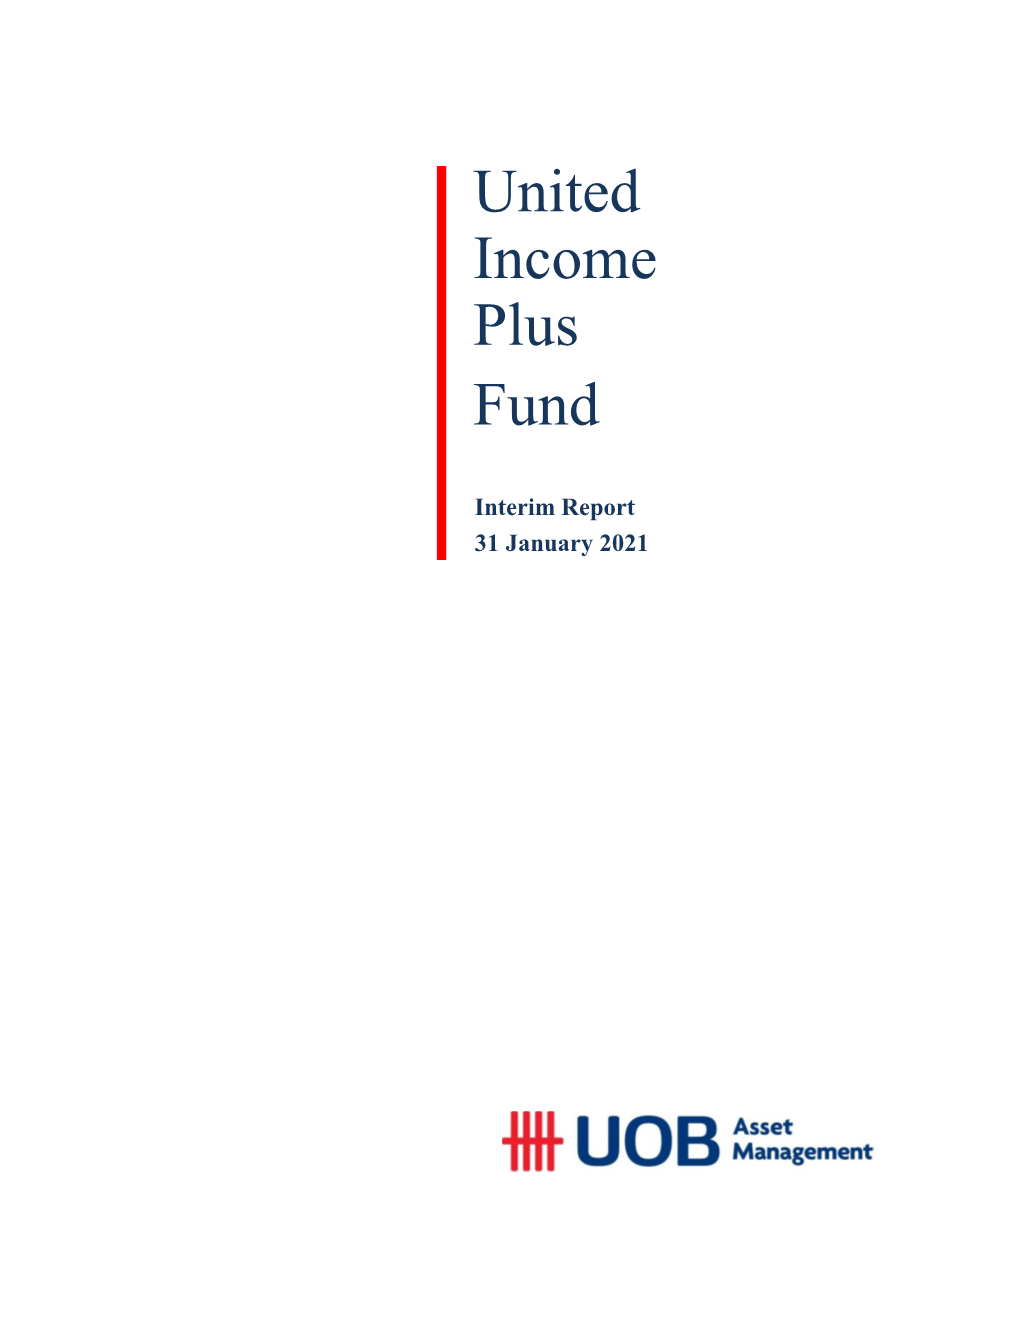 United Income Plus Fund